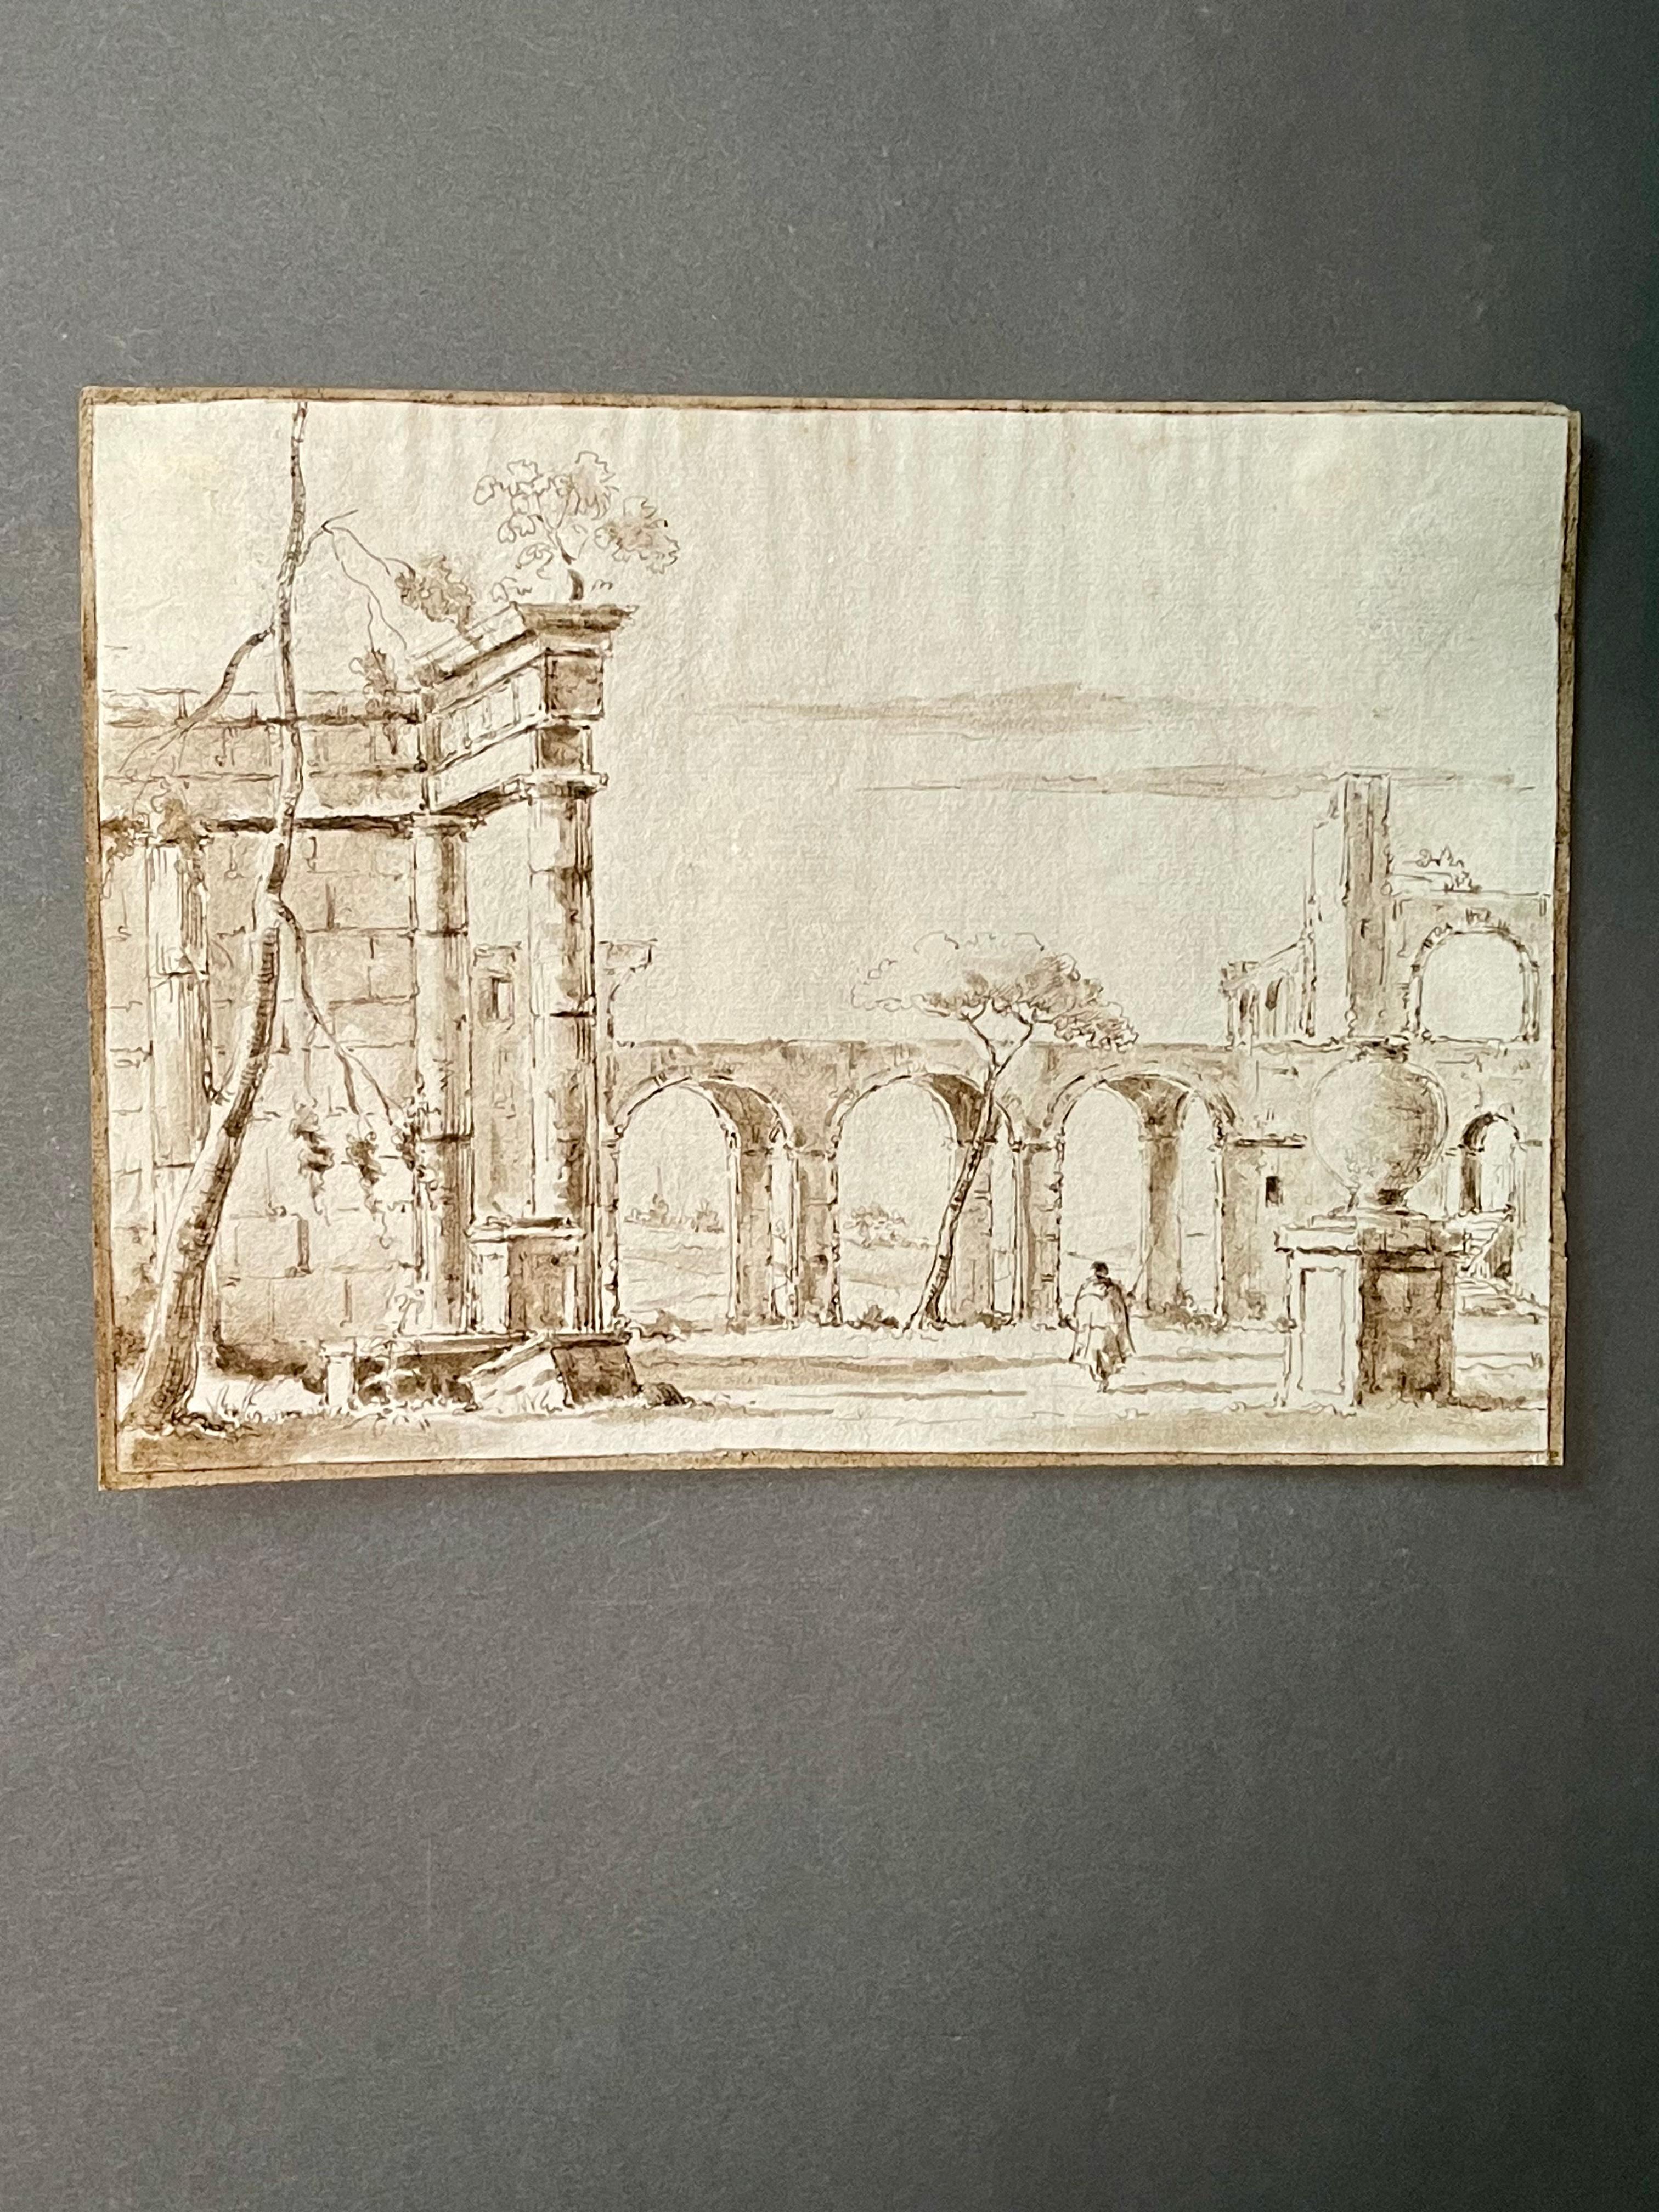 Wichtige Tuschezeichnung, die eine belebte Landschaft mit Ruinen und Aquädukt im Hintergrund darstellt
Venezianische Schule

Jedes Stück unserer Galerie wird auf Wunsch von einem Echtheitszertifikat begleitet, das von Sabrina Egidi, der offiziellen